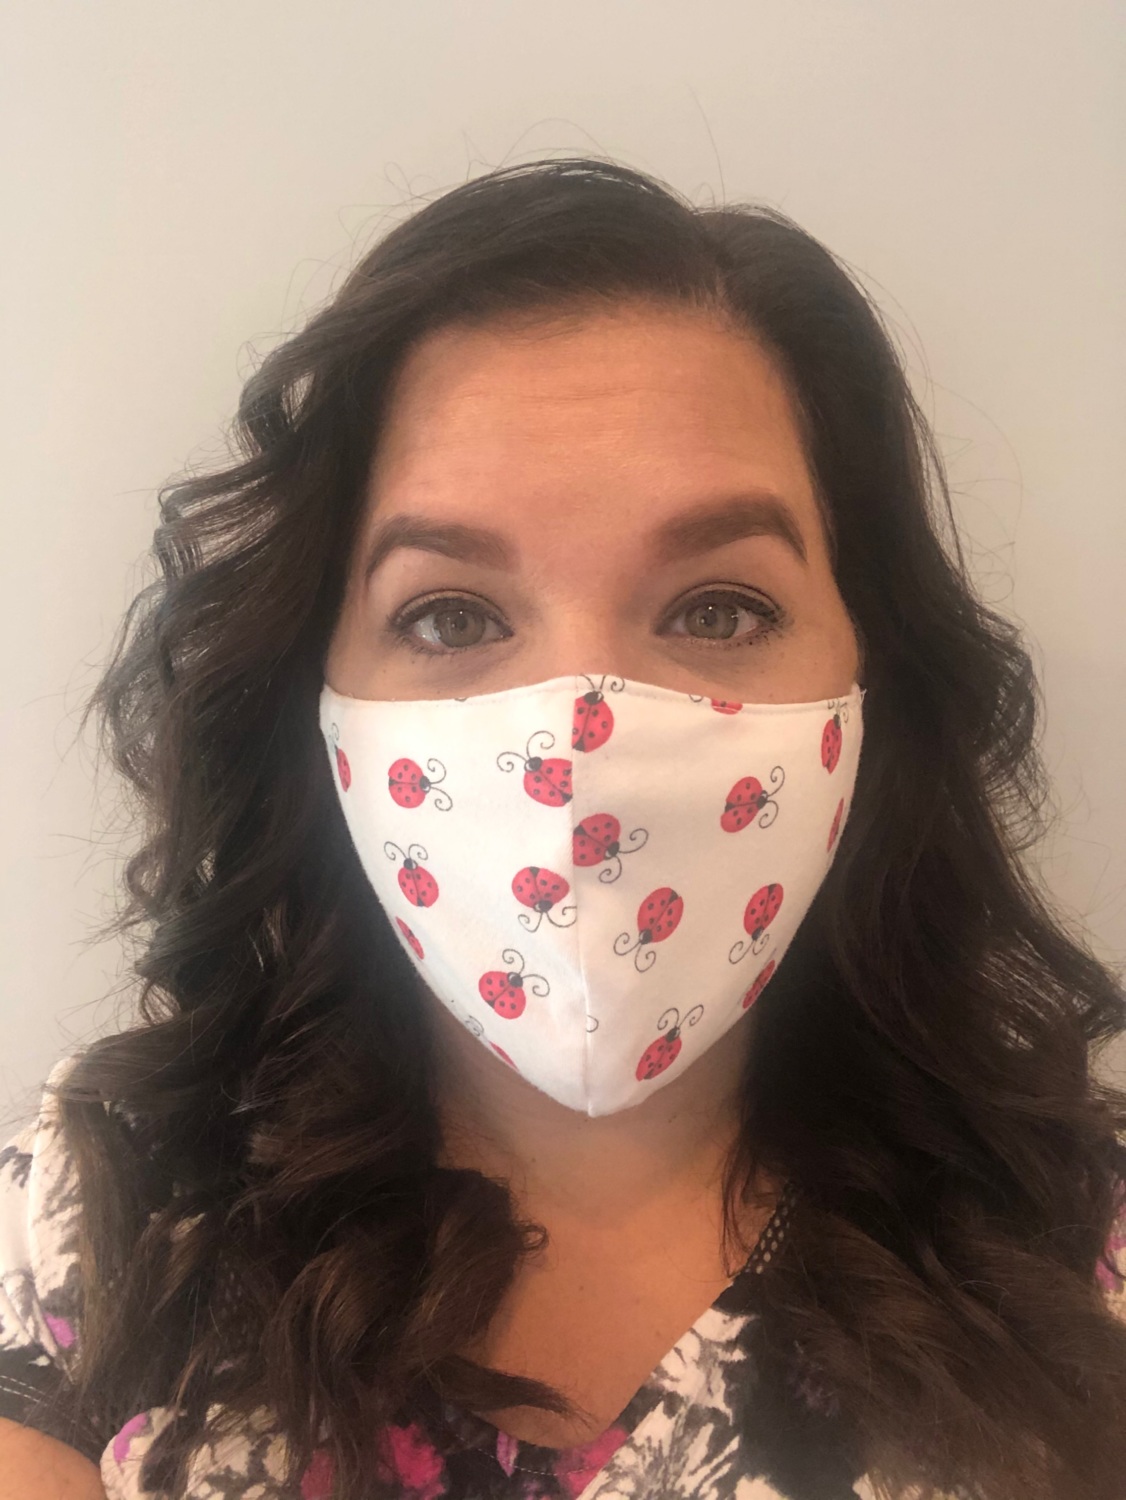 Sarah wearing a face mask